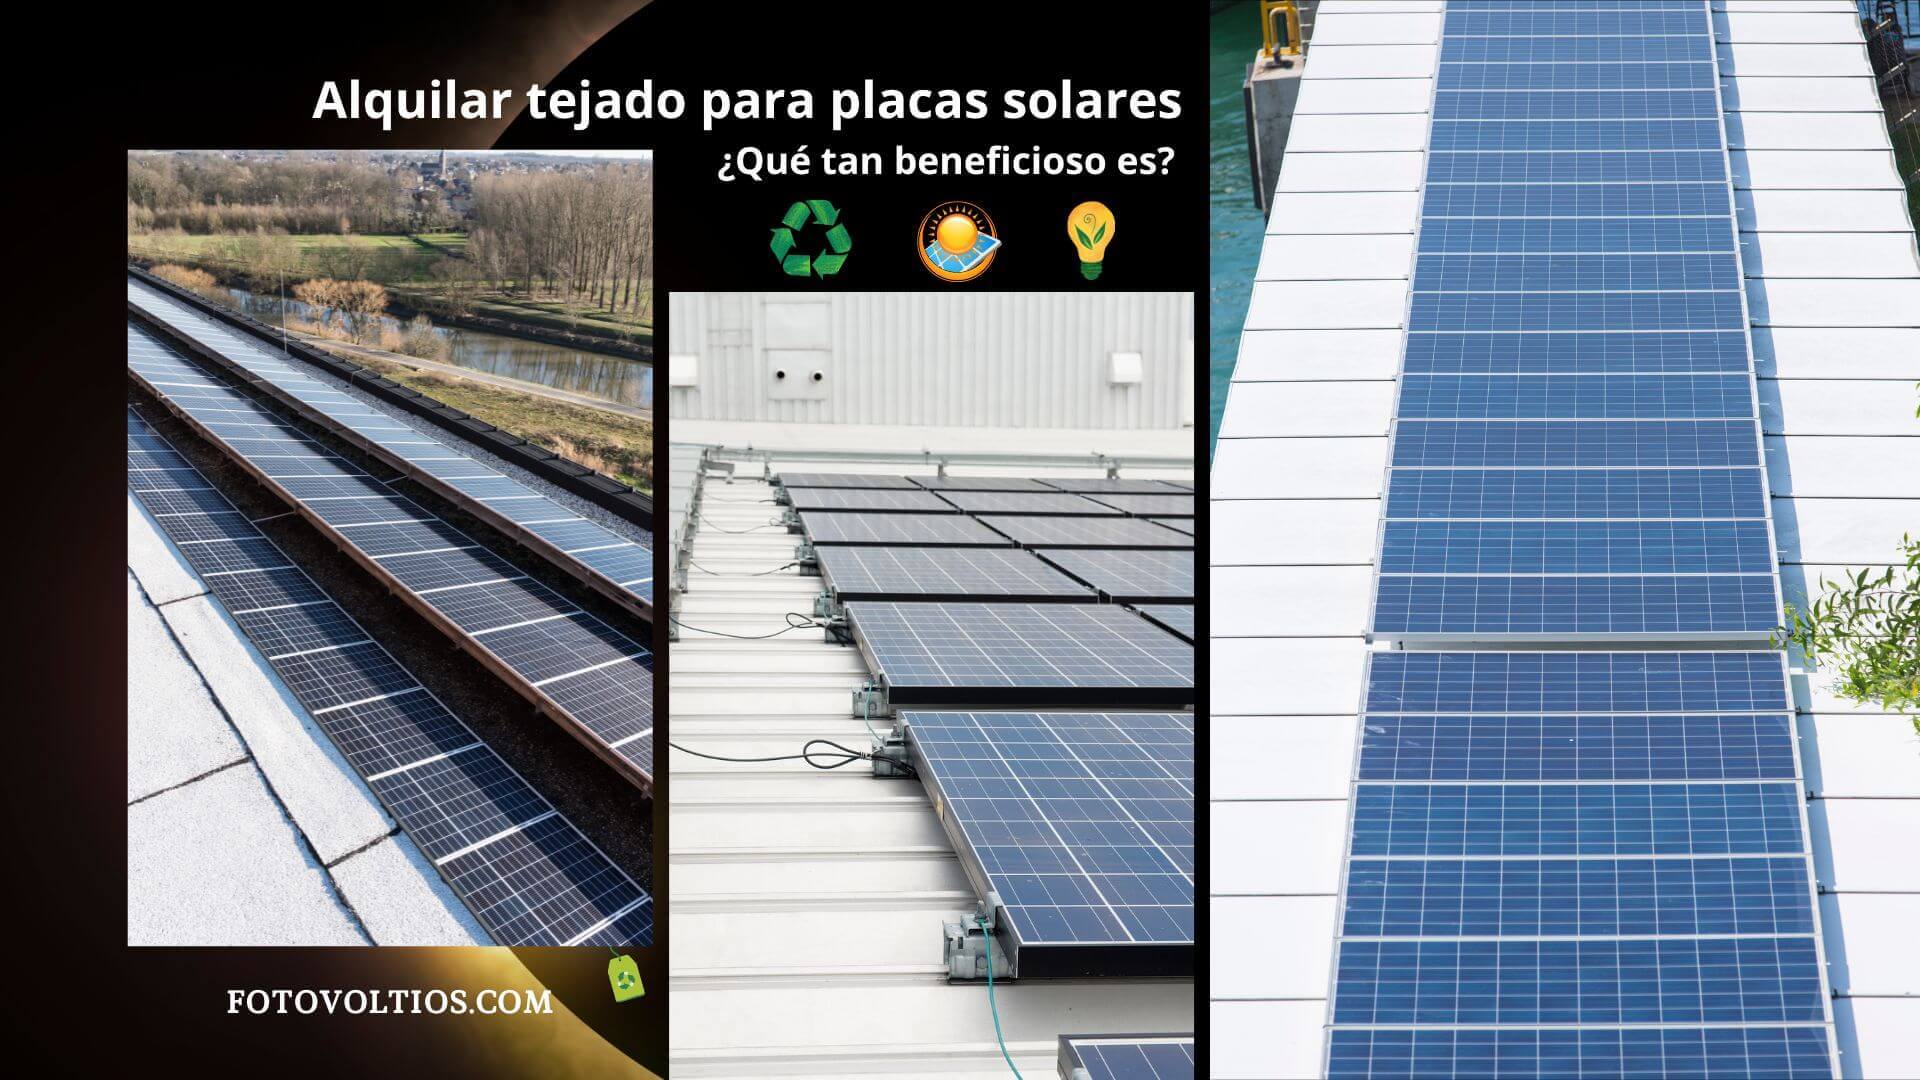 Alquilar tejado para Placas solares ¿Qué tan beneficioso es?